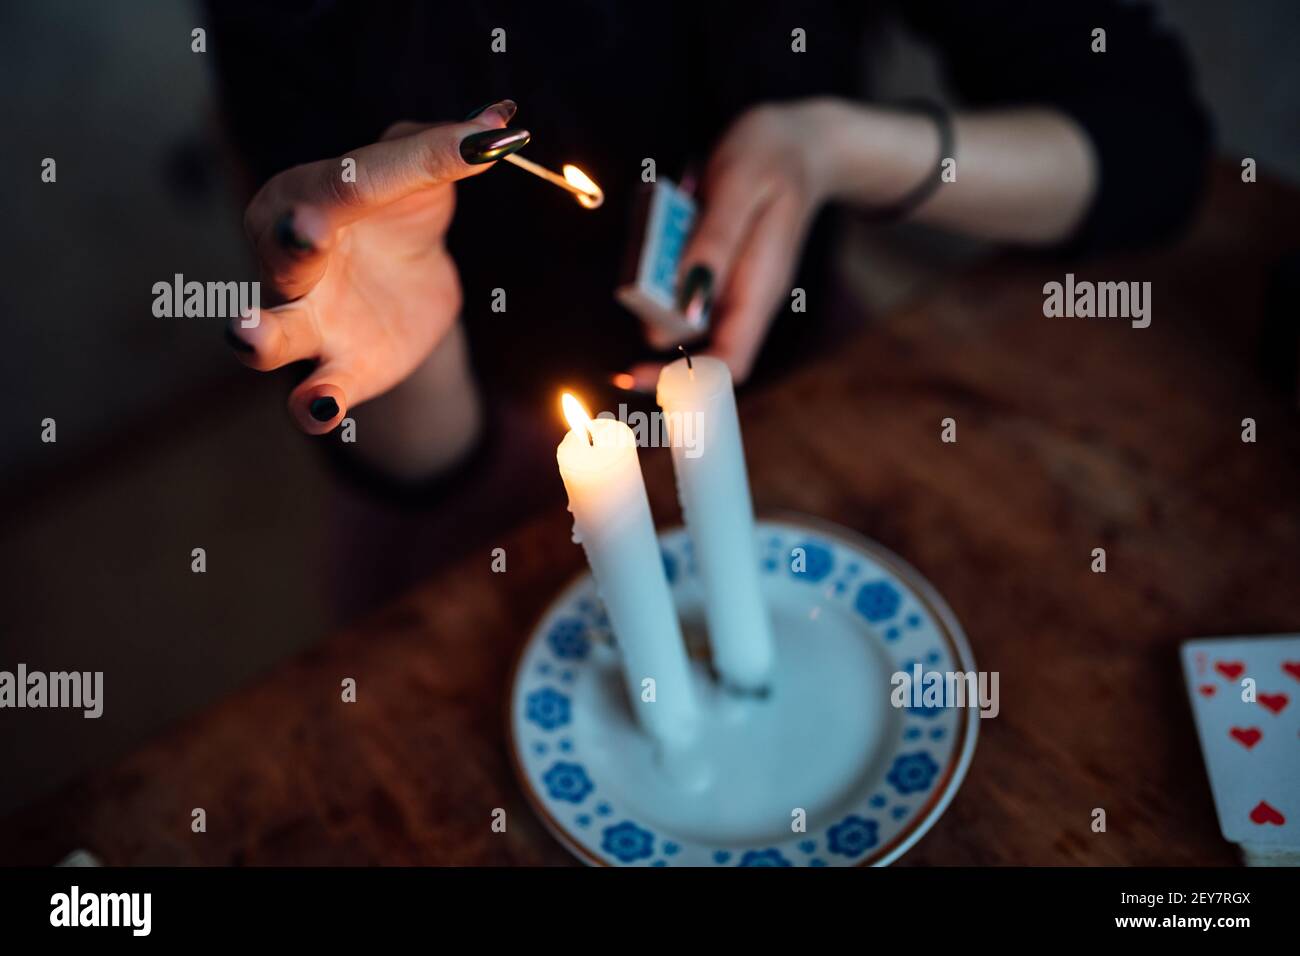 un tueur de fortune allume des bougies rituelles pour prédire l'avenir utilisation de cartes Banque D'Images